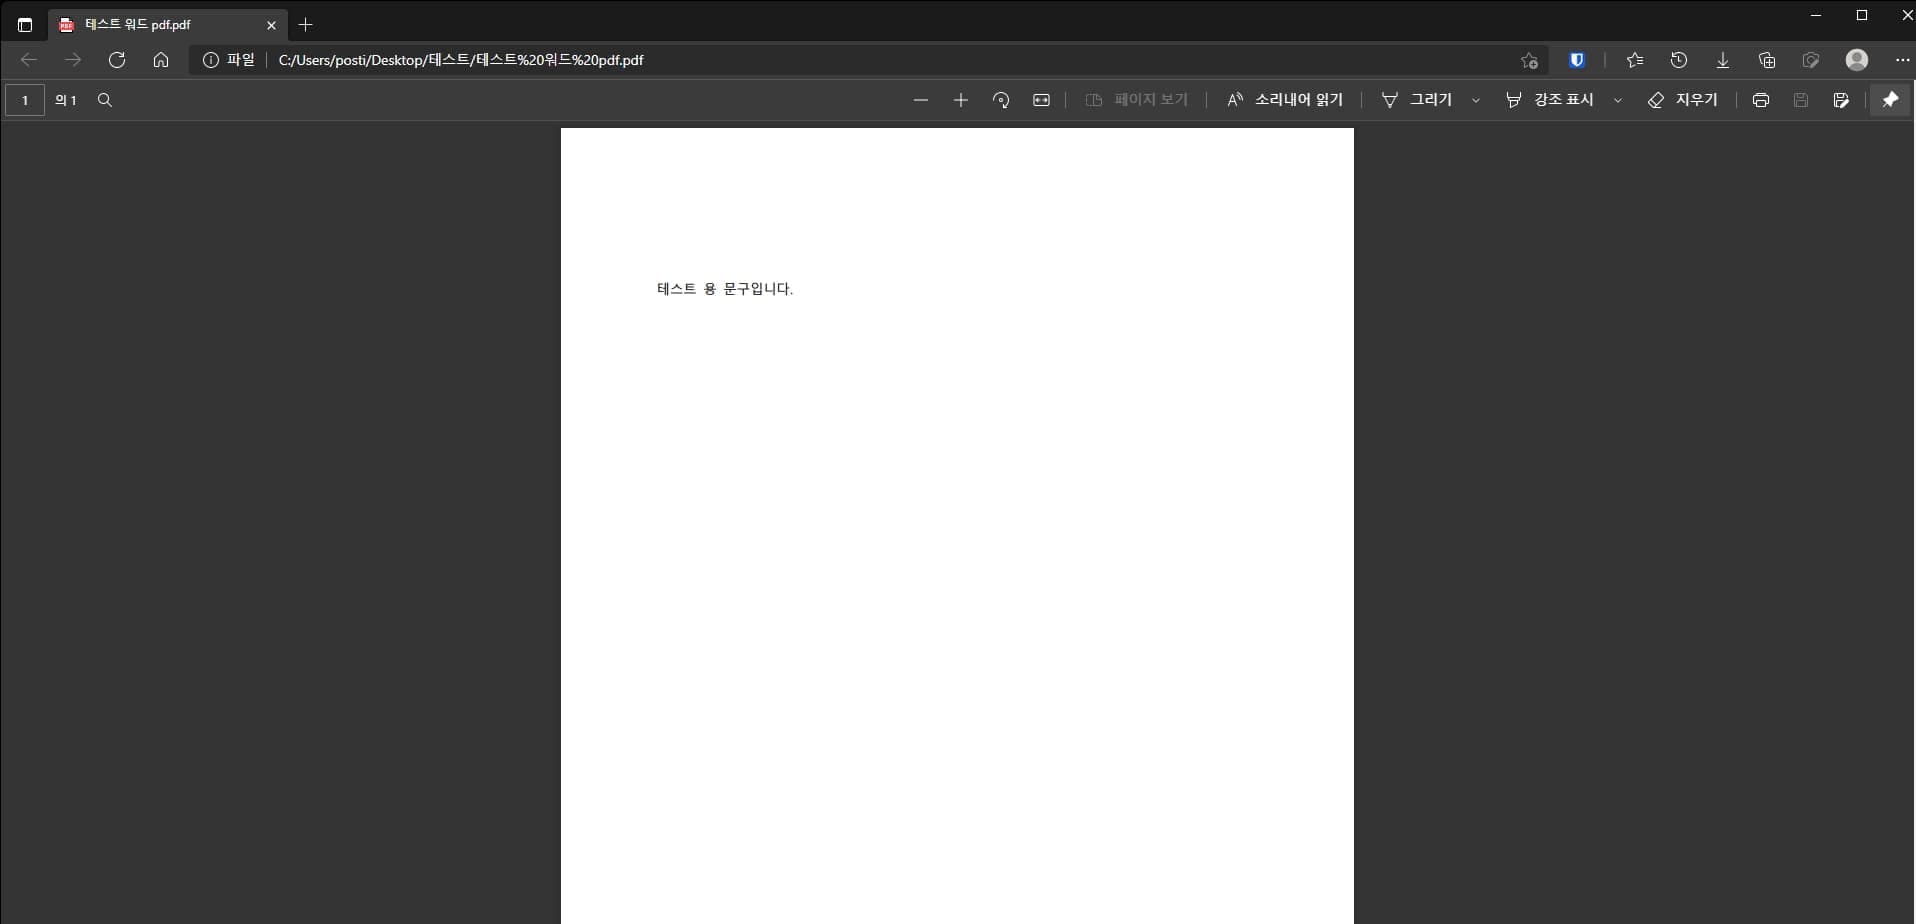 저장된 워드 pdf 파일